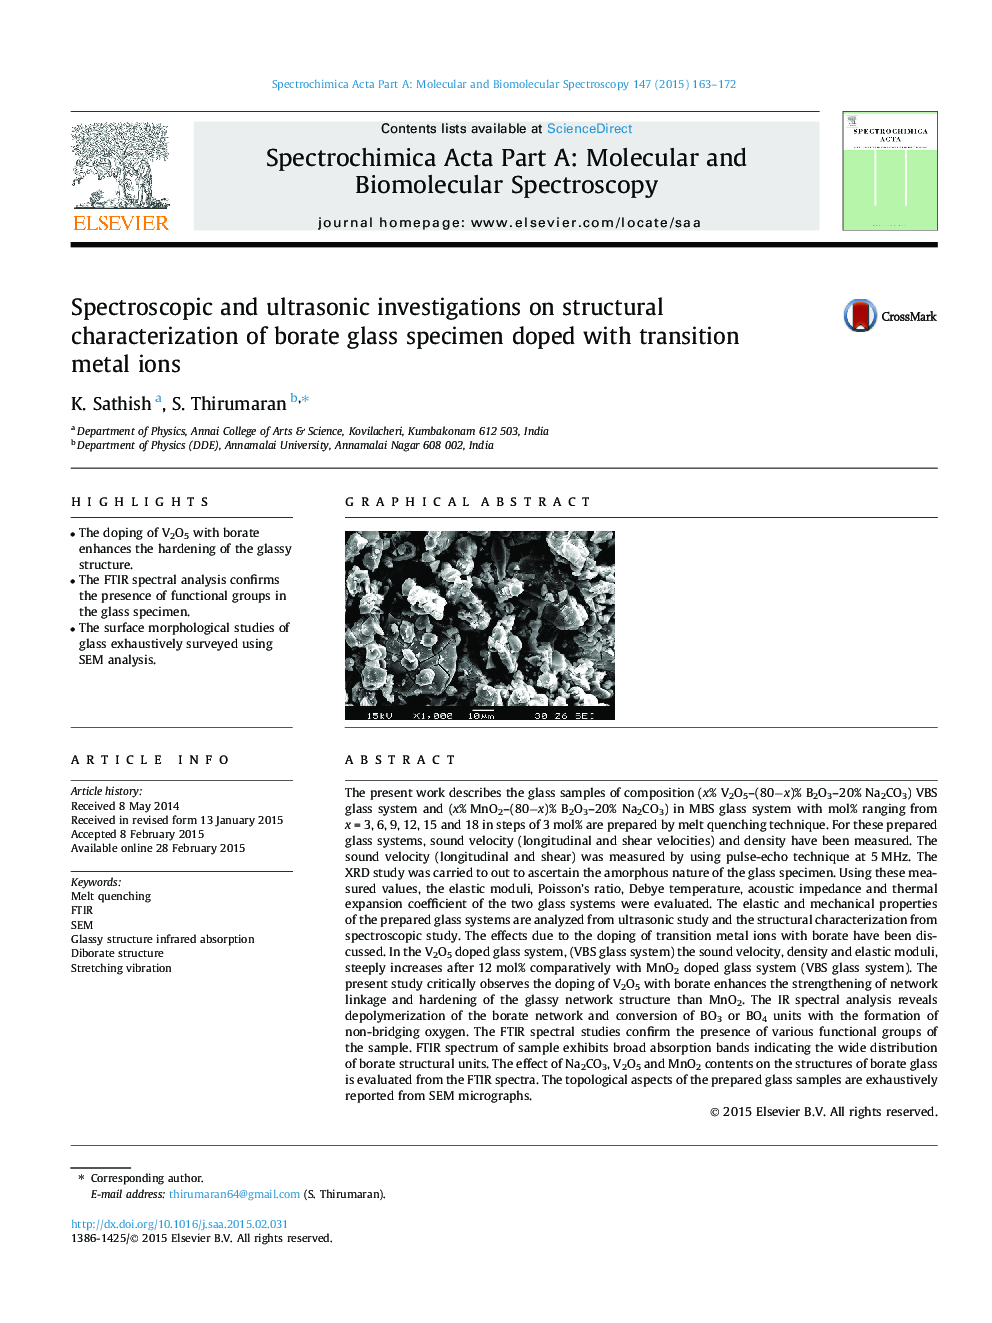 تحقیقات اسپکتروسکوپی و اولتراسونیک در خصوص ویژگی ساختاری نمونه شیشه ای بورات که با یون های فلز گذرا 